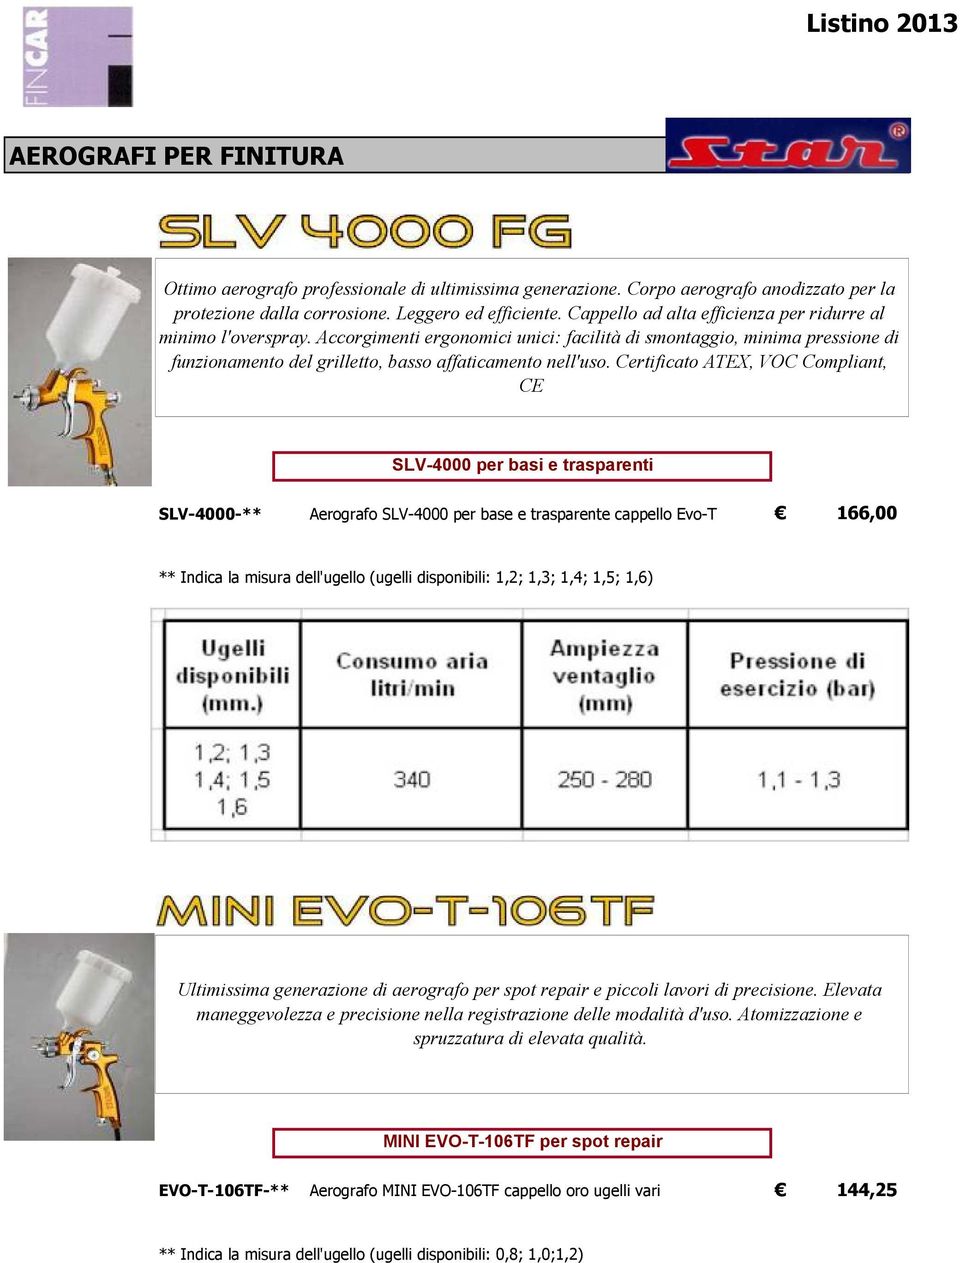 Certificato ATEX, VOC Compliant, CE SLV-4000 per basi e trasparenti SLV-4000-** Aerografo SLV-4000 per base e trasparente cappello Evo-T 166,00 ** Indica la misura dell'ugello (ugelli disponibili: